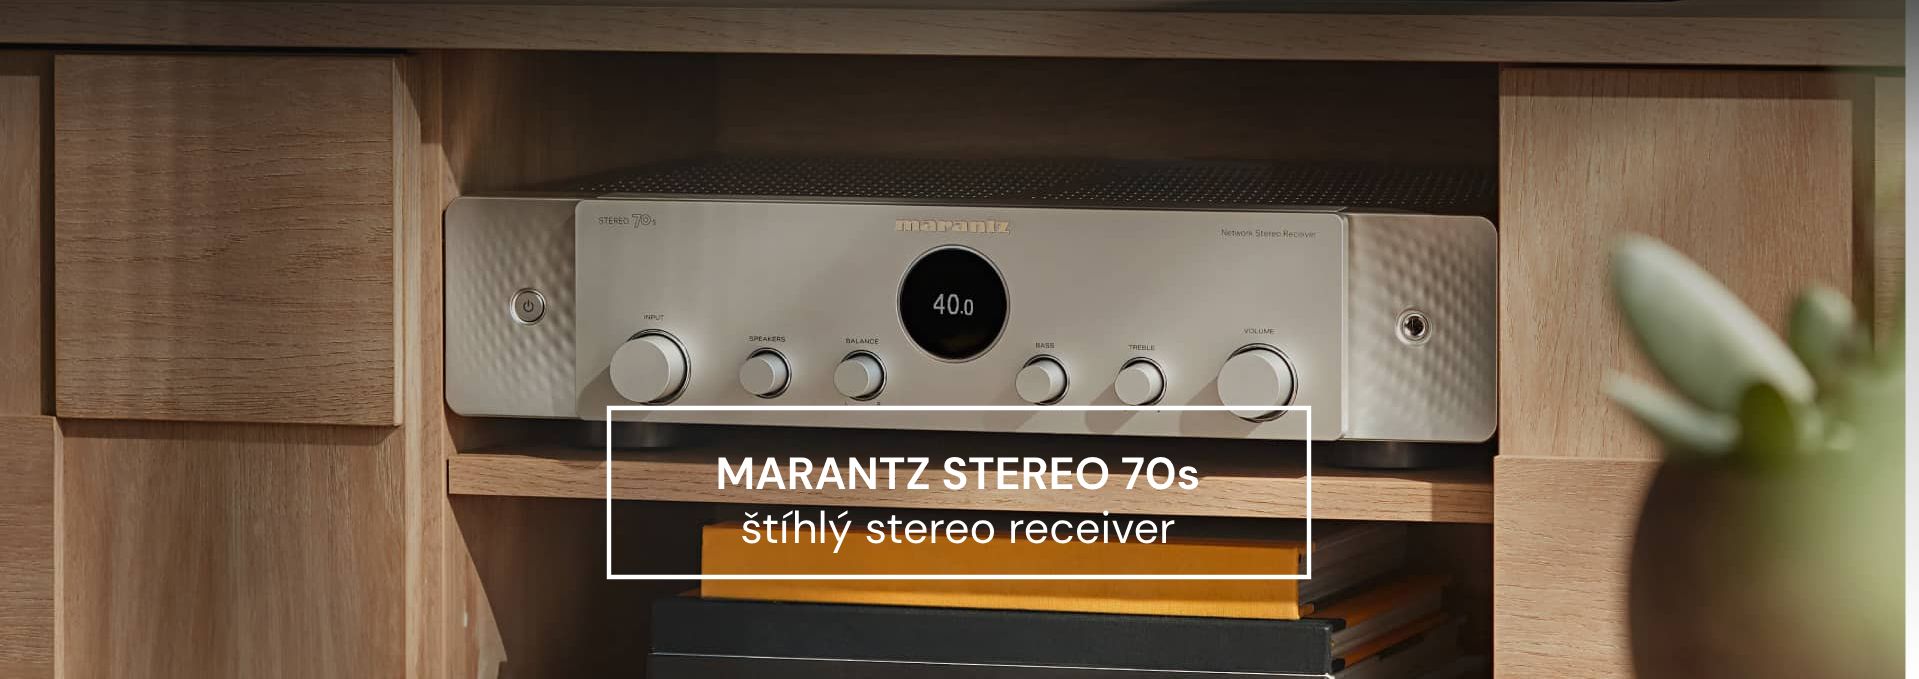 Marantz STEREO 70s